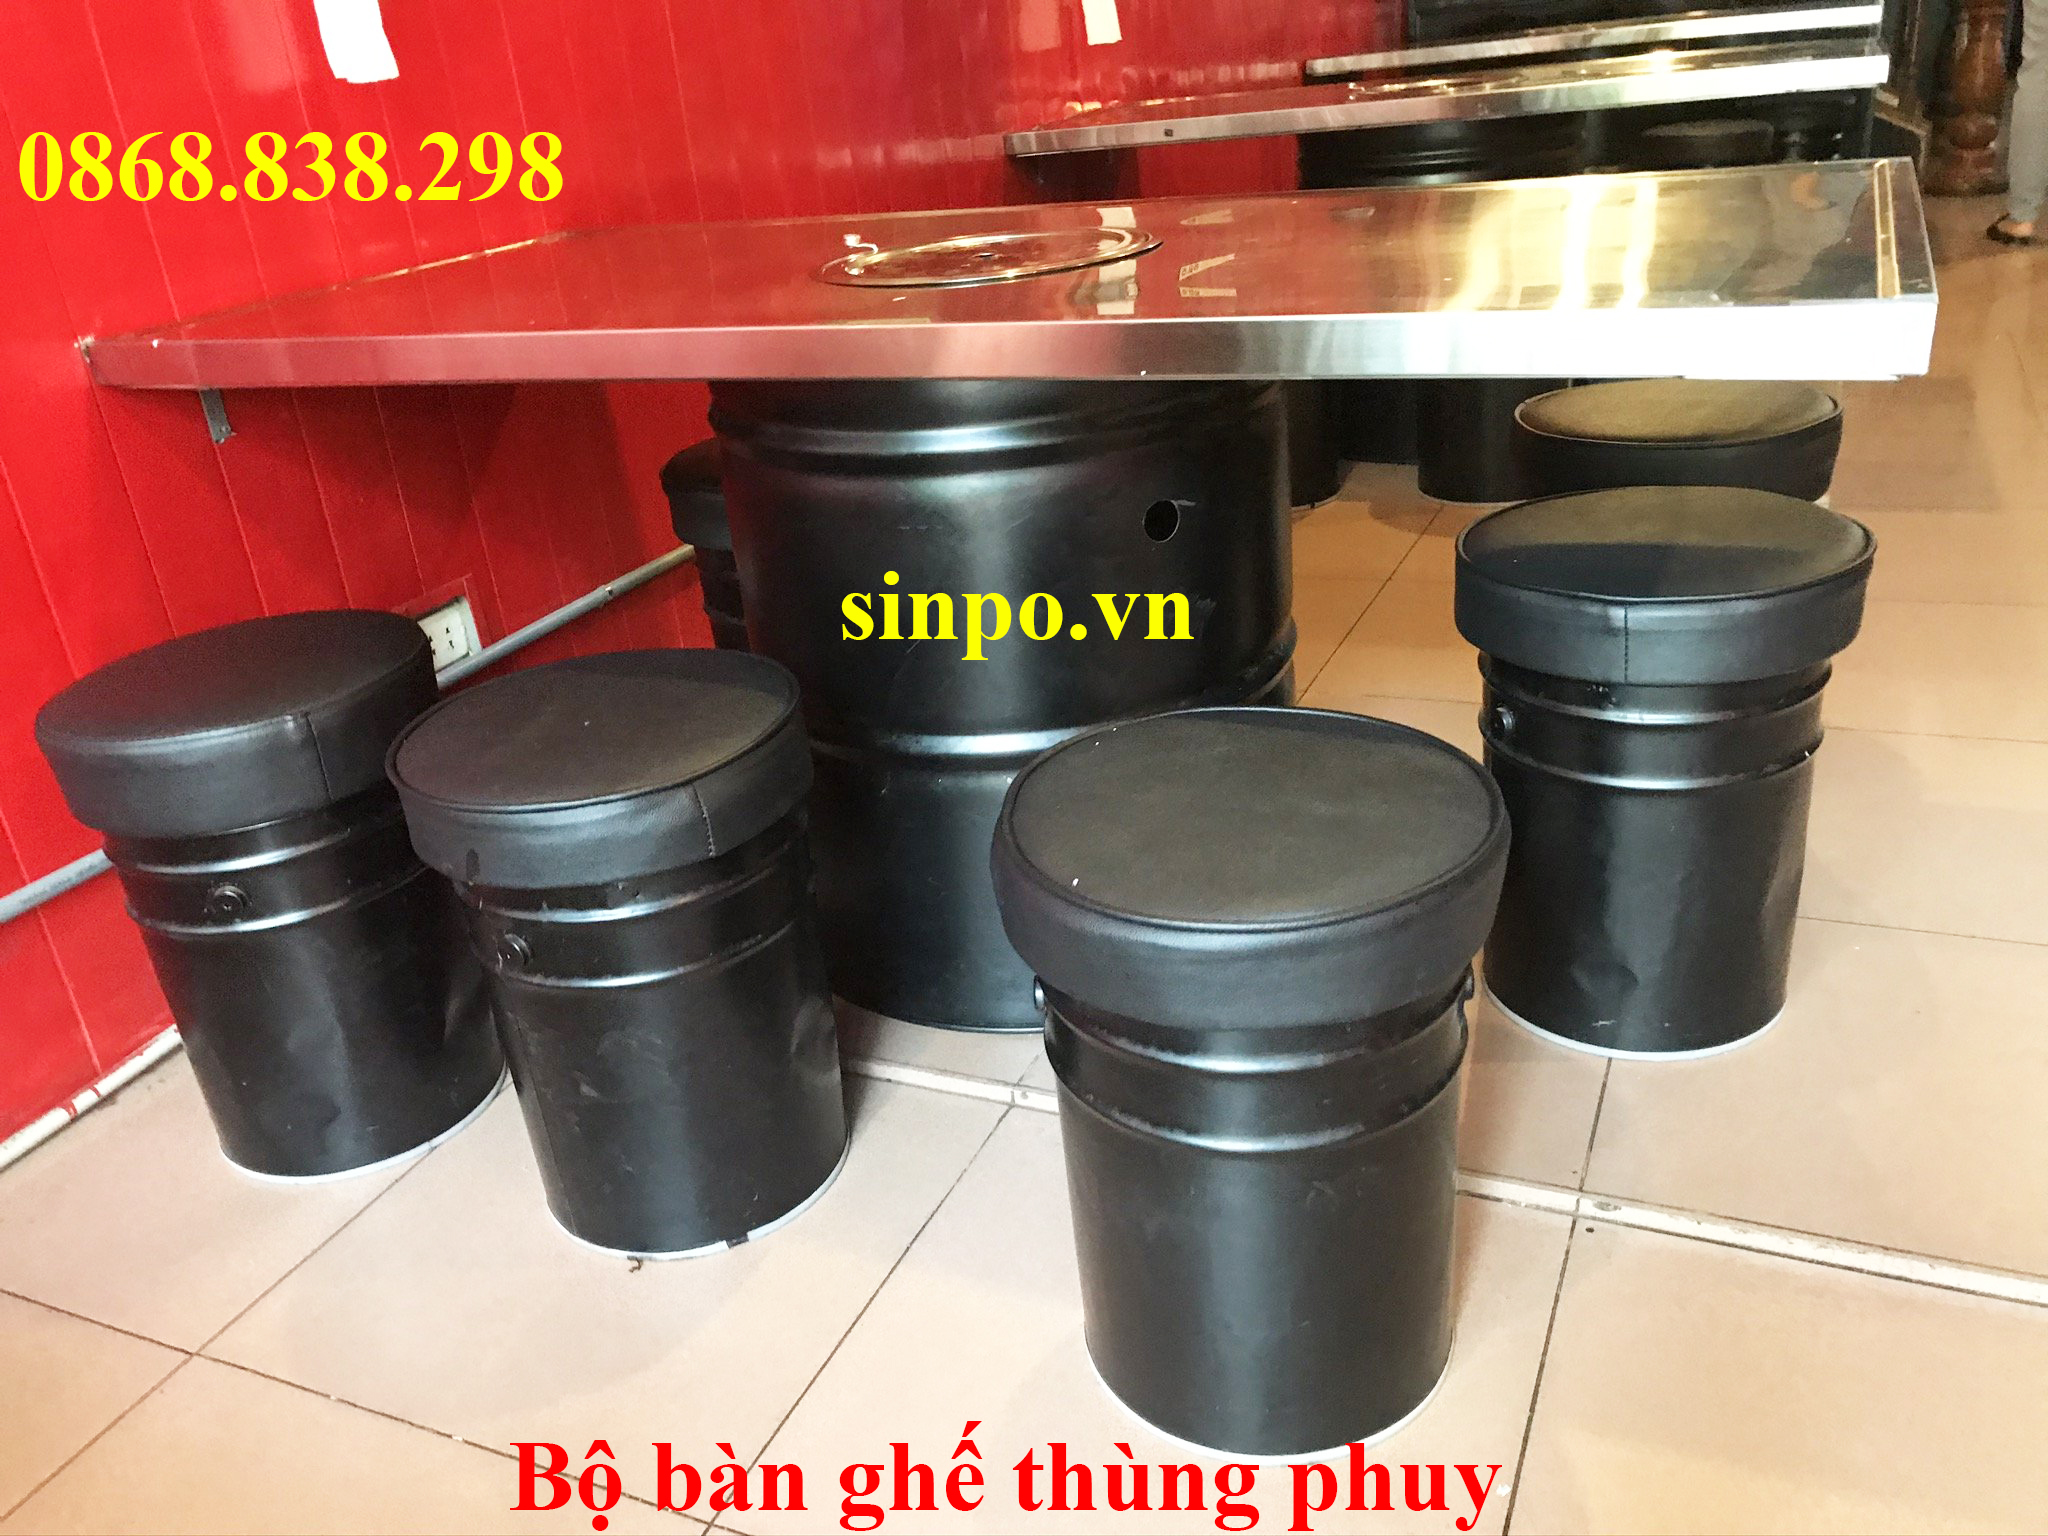 Bộ bàn ghế thùng phuy nhà hàng tại Hà Nội, TPHCM, Hải Phòng, Đà Nẵng, Bình Dương,..